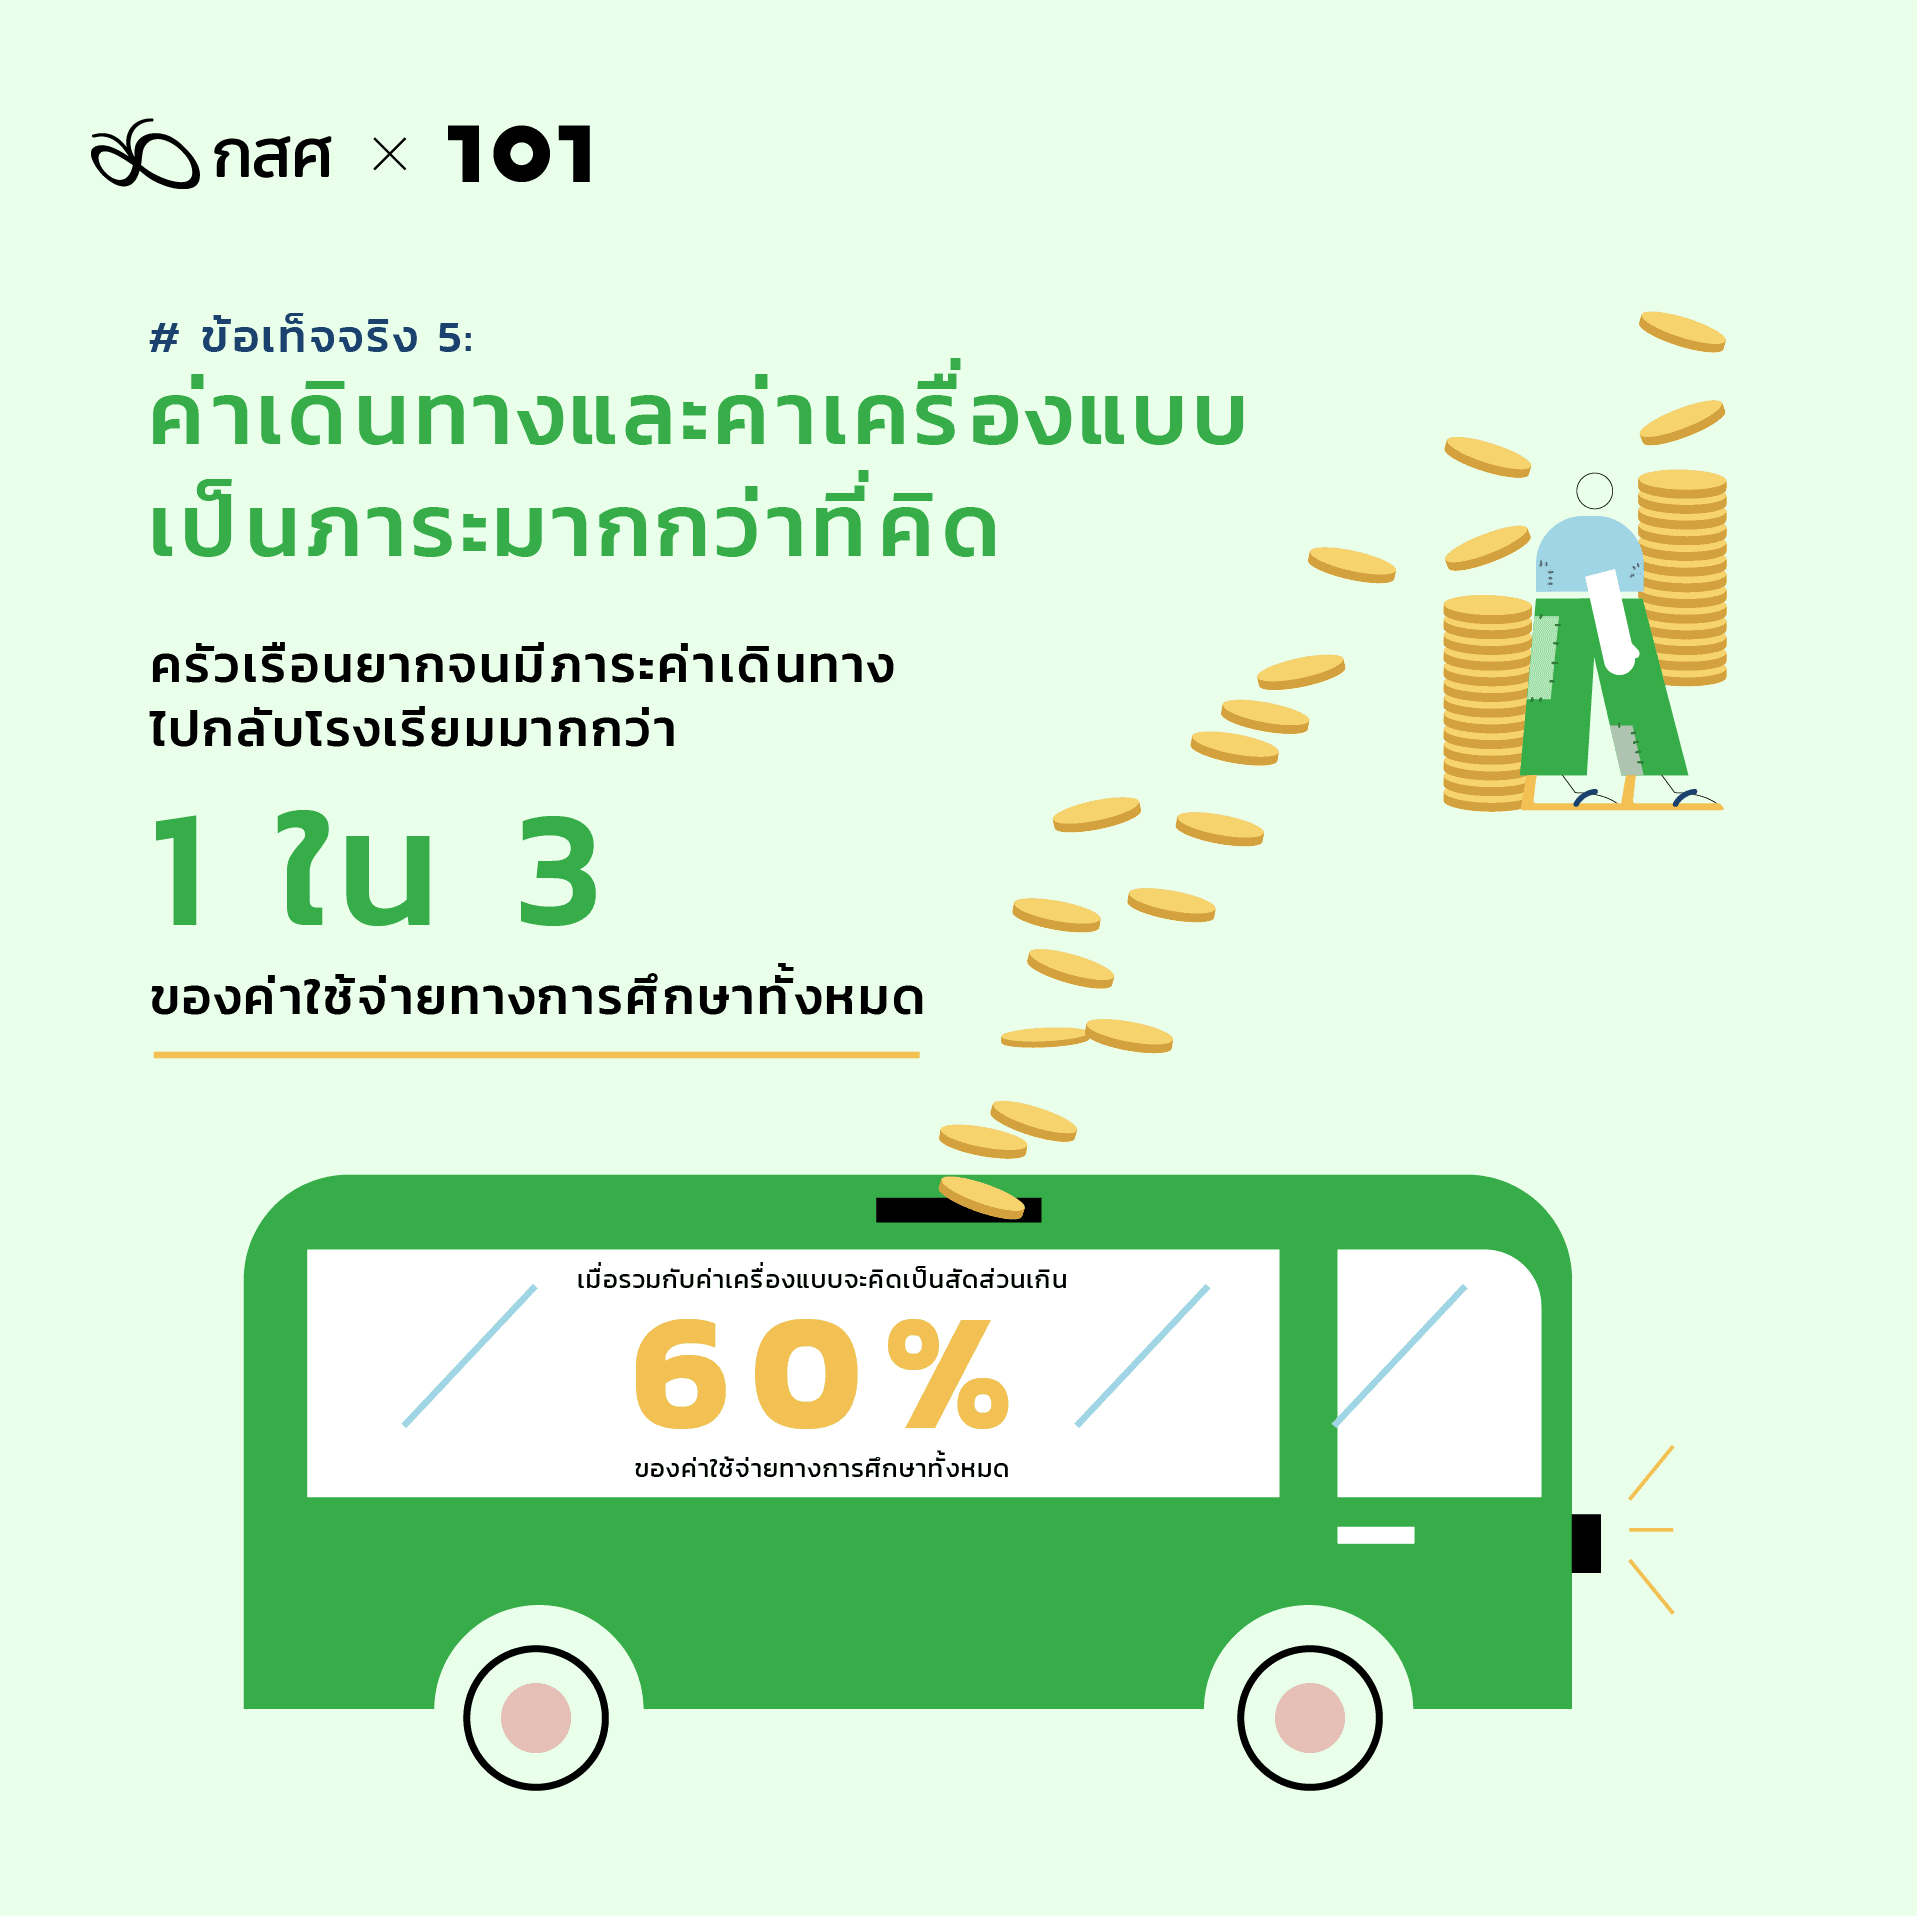 สำรวจความเหลื่อมล้ำการศึกษาไทย เพิ่มโอกาสให้เด็กยากจน: ข้อเท็จจริง 5: ค่าเดินทางและค่าเครื่องแบบเป็นภาระมากกว่าที่คิด